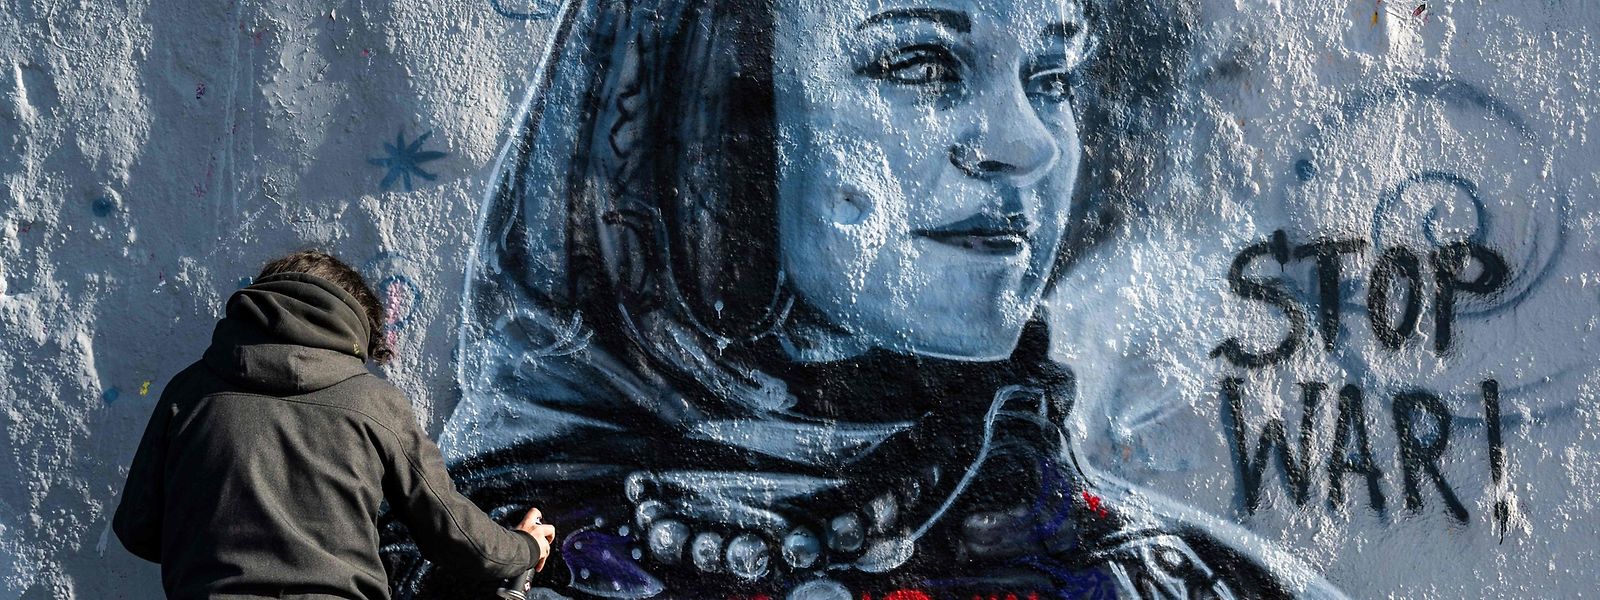 Der in Berlin lebende kolumbianische Straßenkünstler Arte Vilu arbeitet an einem Wandgemälde, das eine ukrainische Frau in traditioneller Kleidung zeigt.